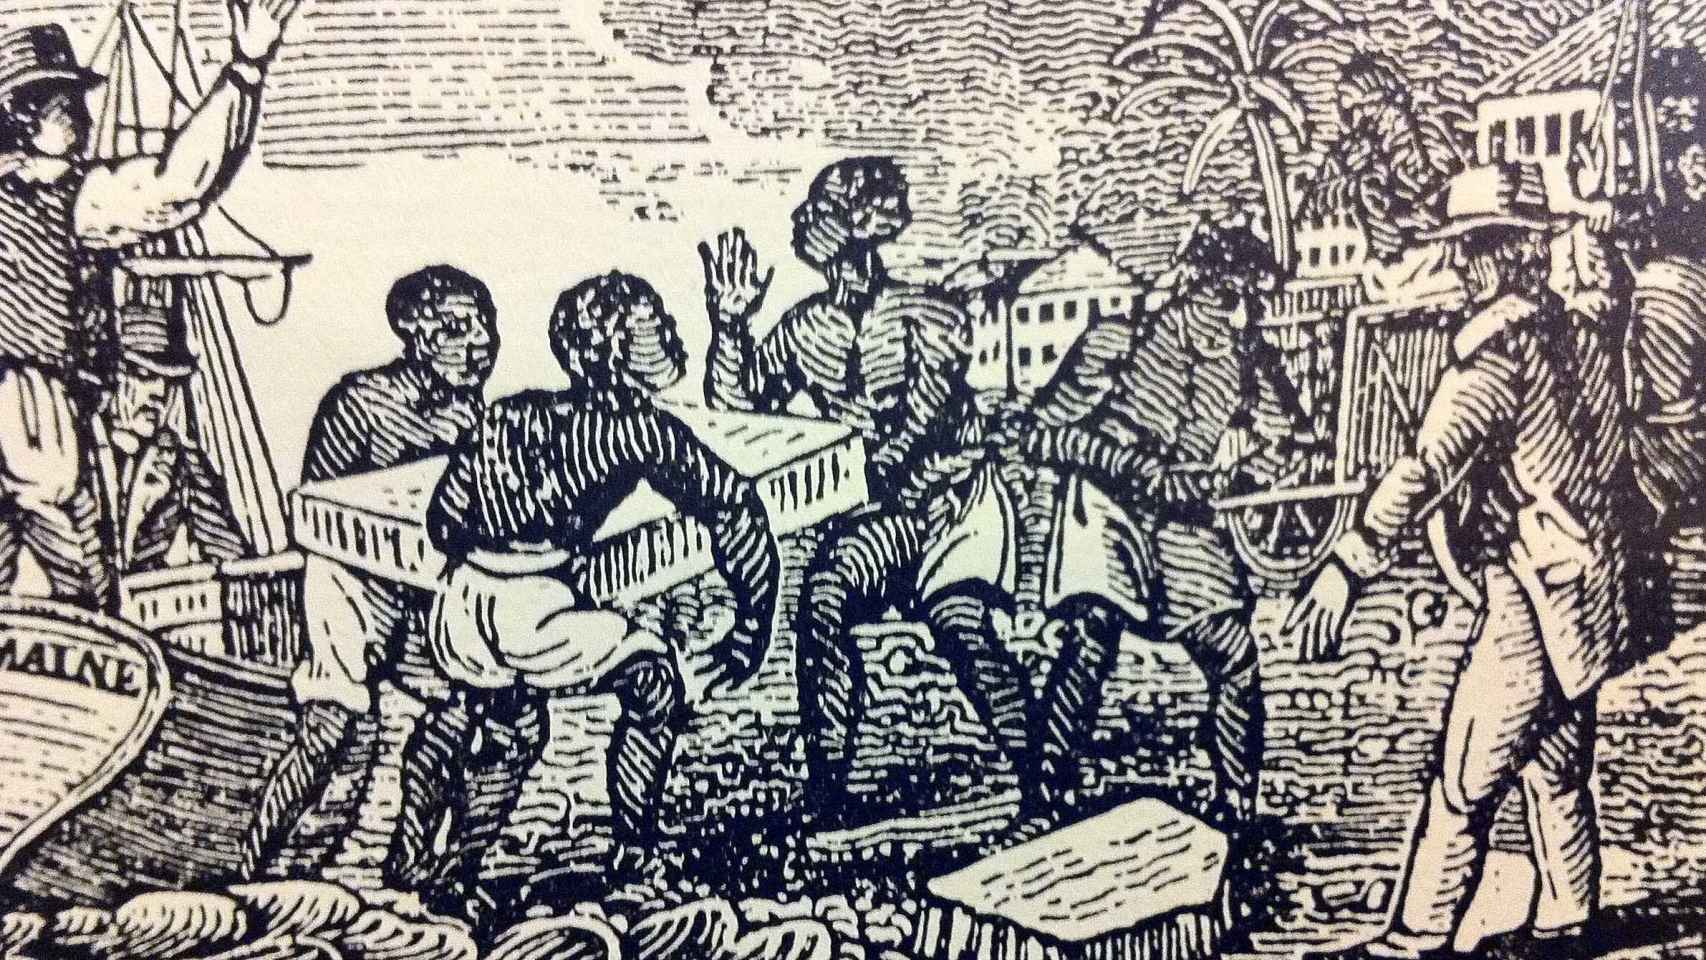 Esclavos descargando hielo en Cuba (1832).